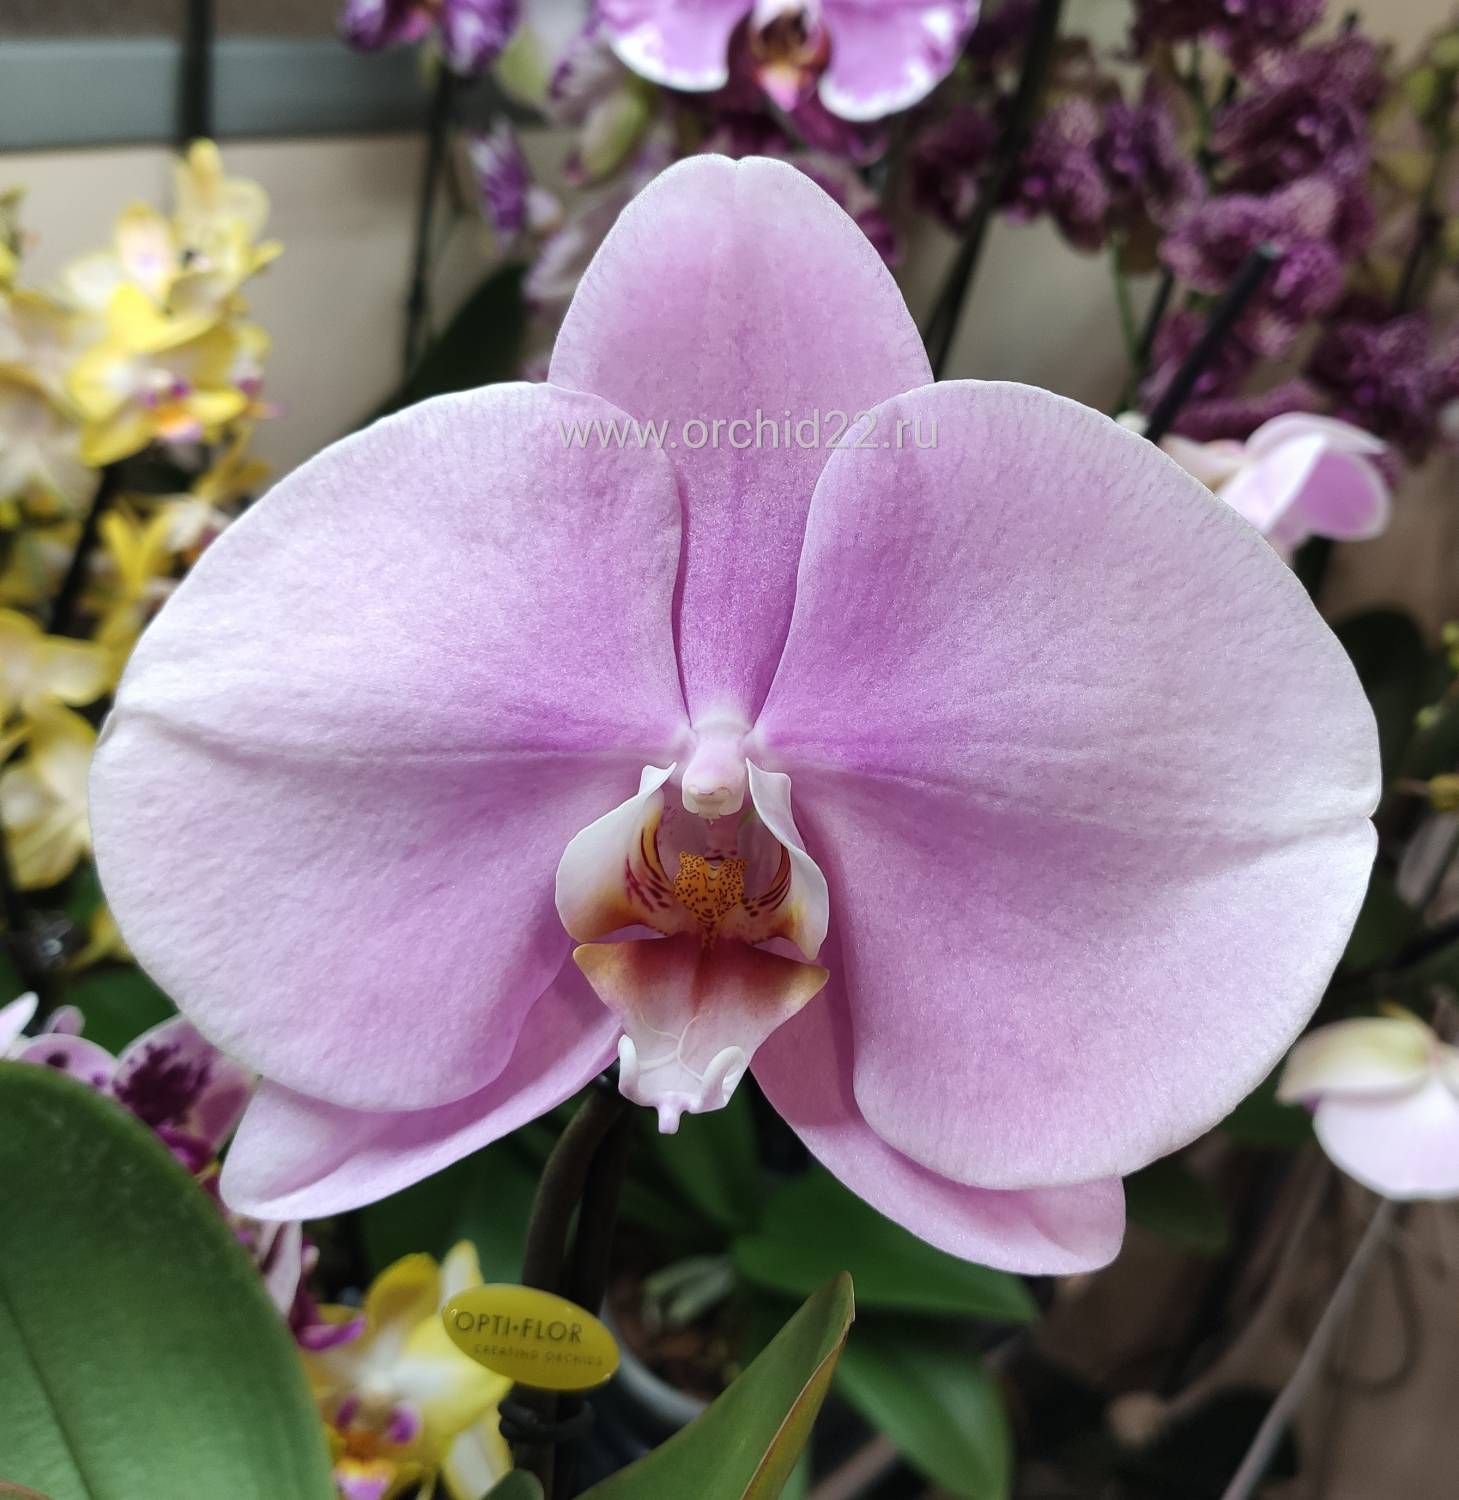 Описание белой орхидеи: её сорта, требования, правила выращивания